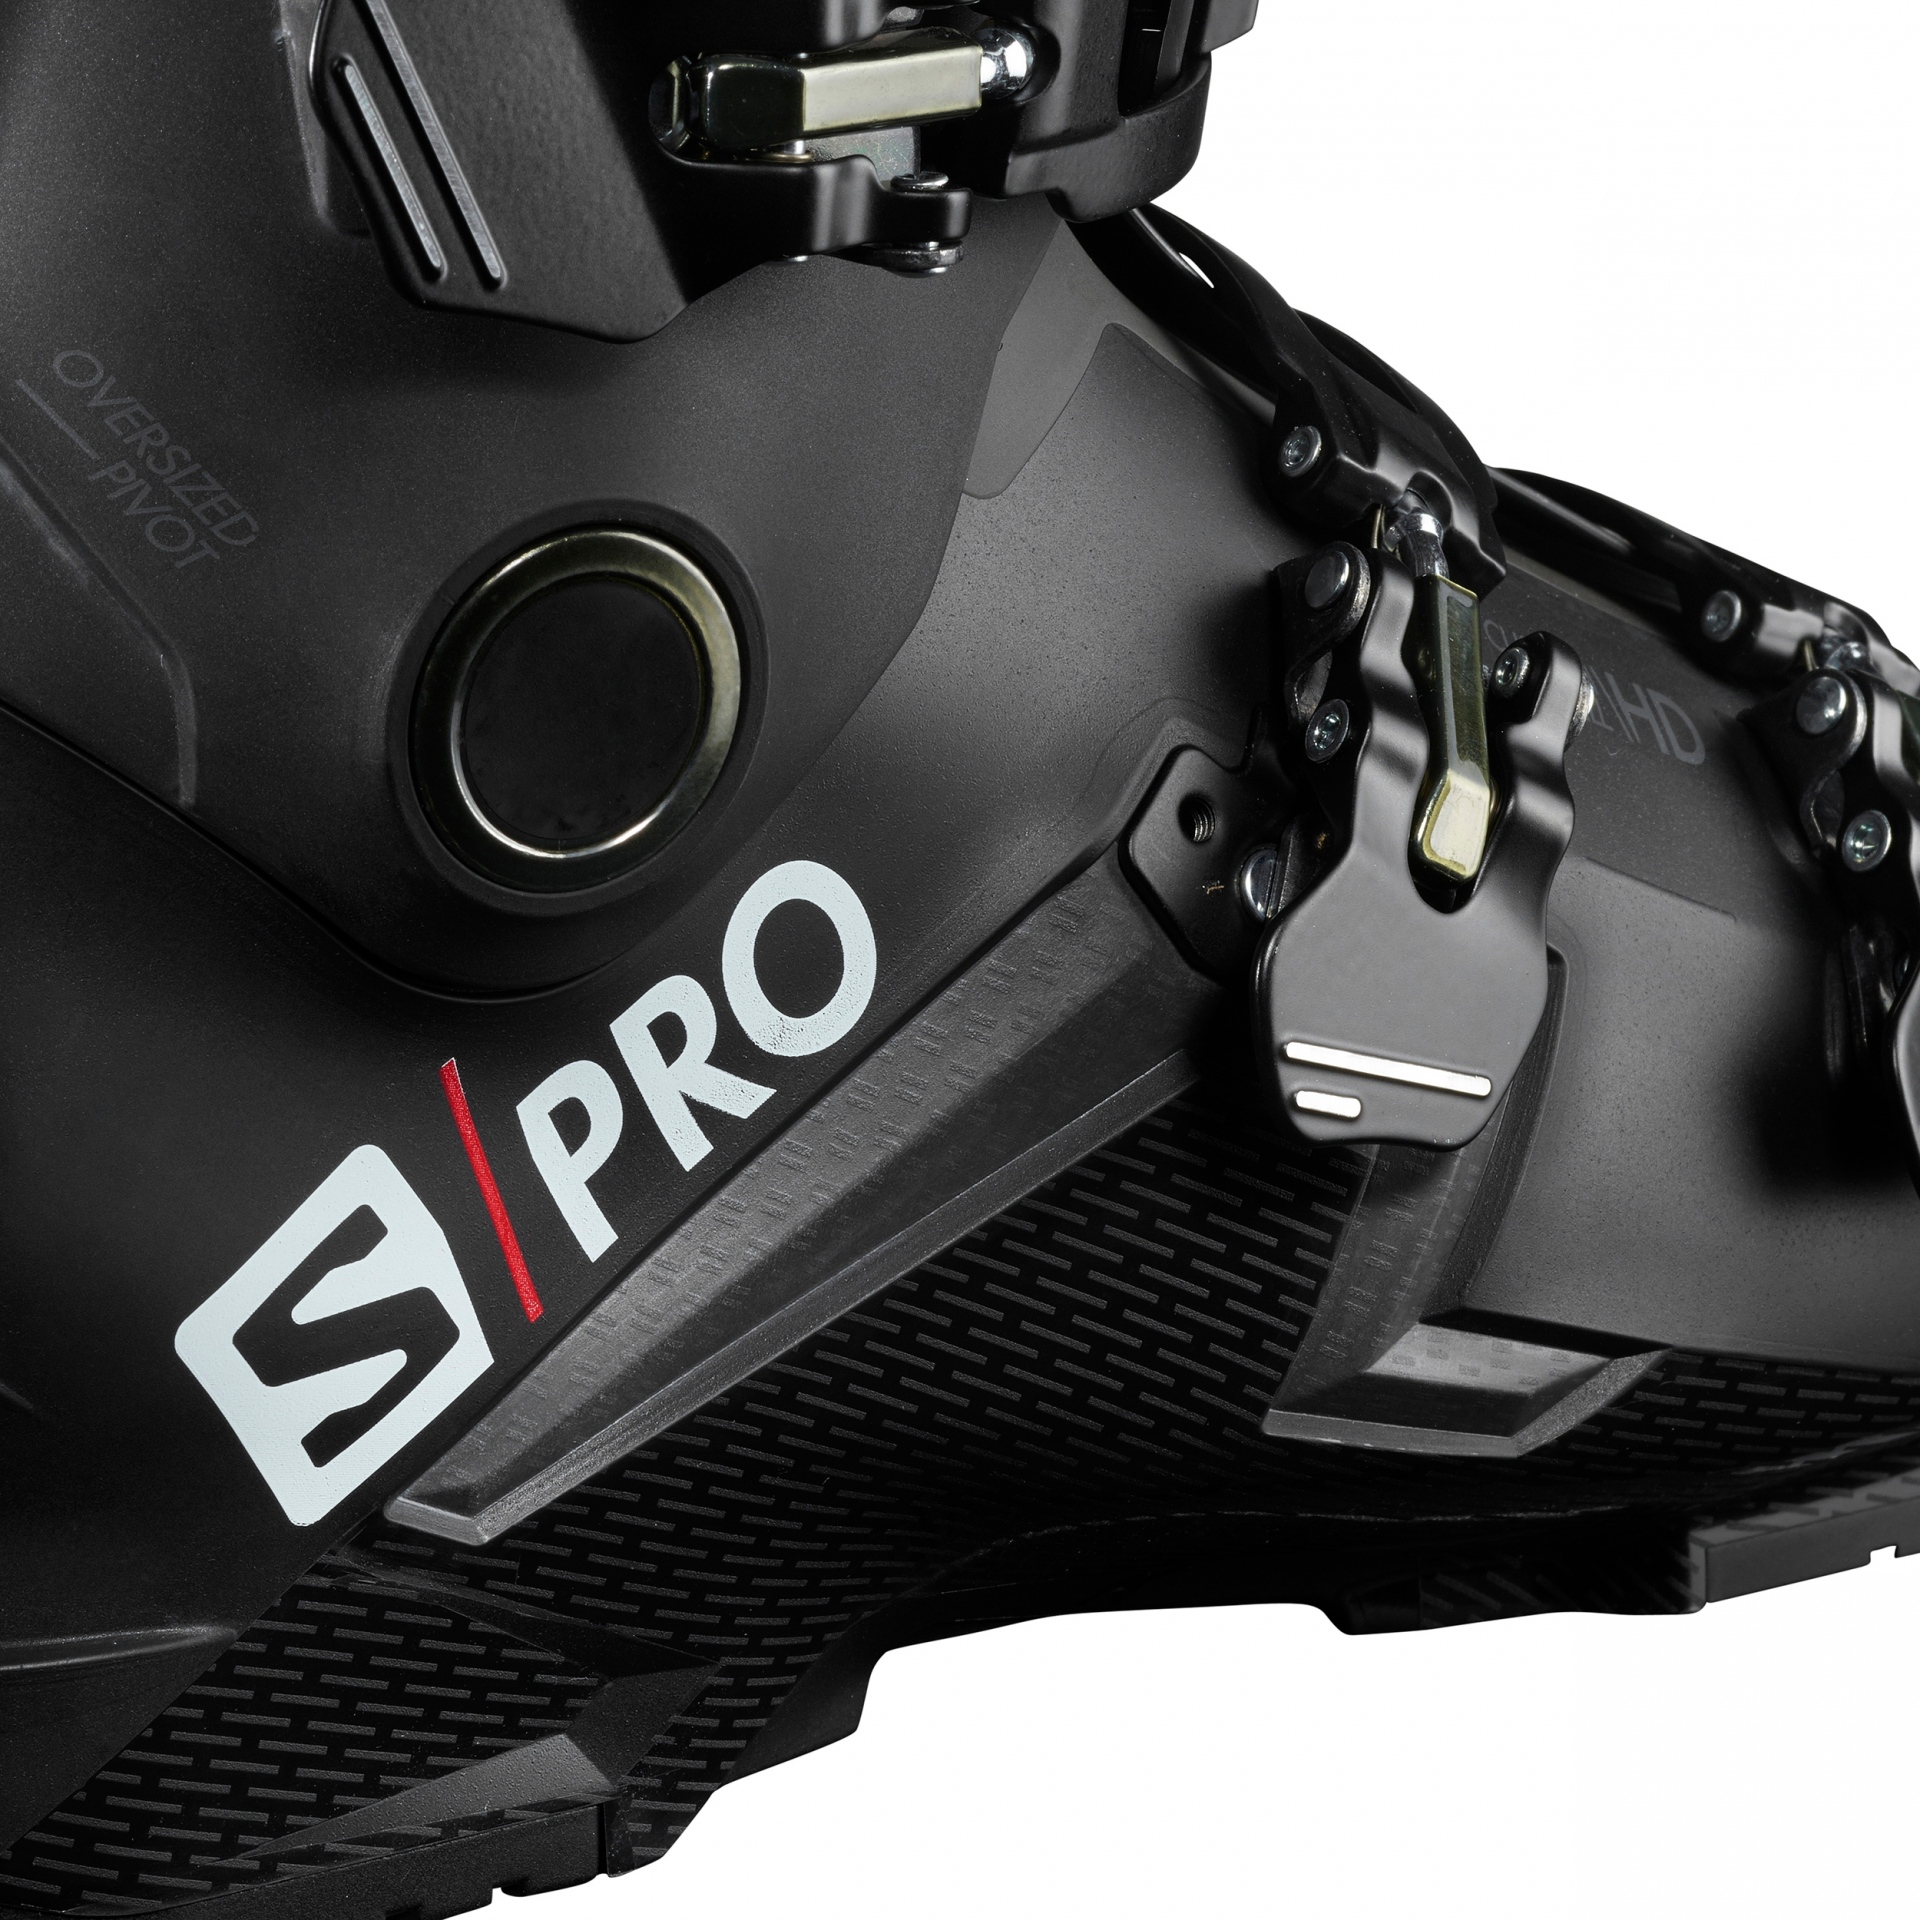 Ботинки для горных лыж Salomon s/Pro 100. Salomon SPK Pro. Salomon s Pro Advance. Ботинки для горных лыж Salomon s/Max 110.